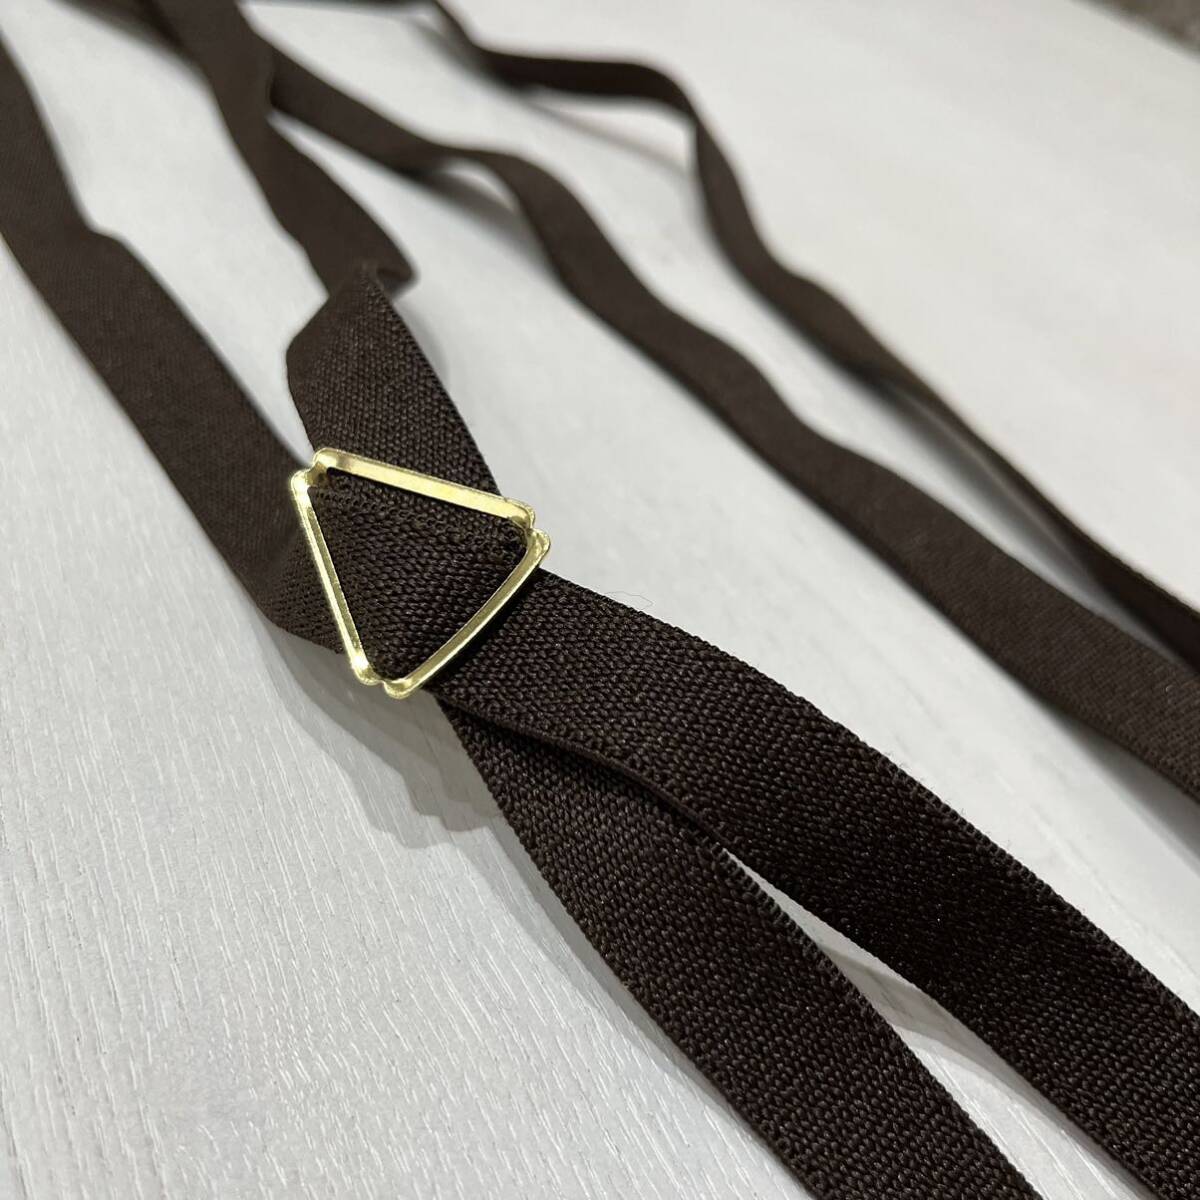  новый товар USA производства Suspender Factory подтяжки Factory ремень эластичность материалы Brown Gold America производства шар mc2673